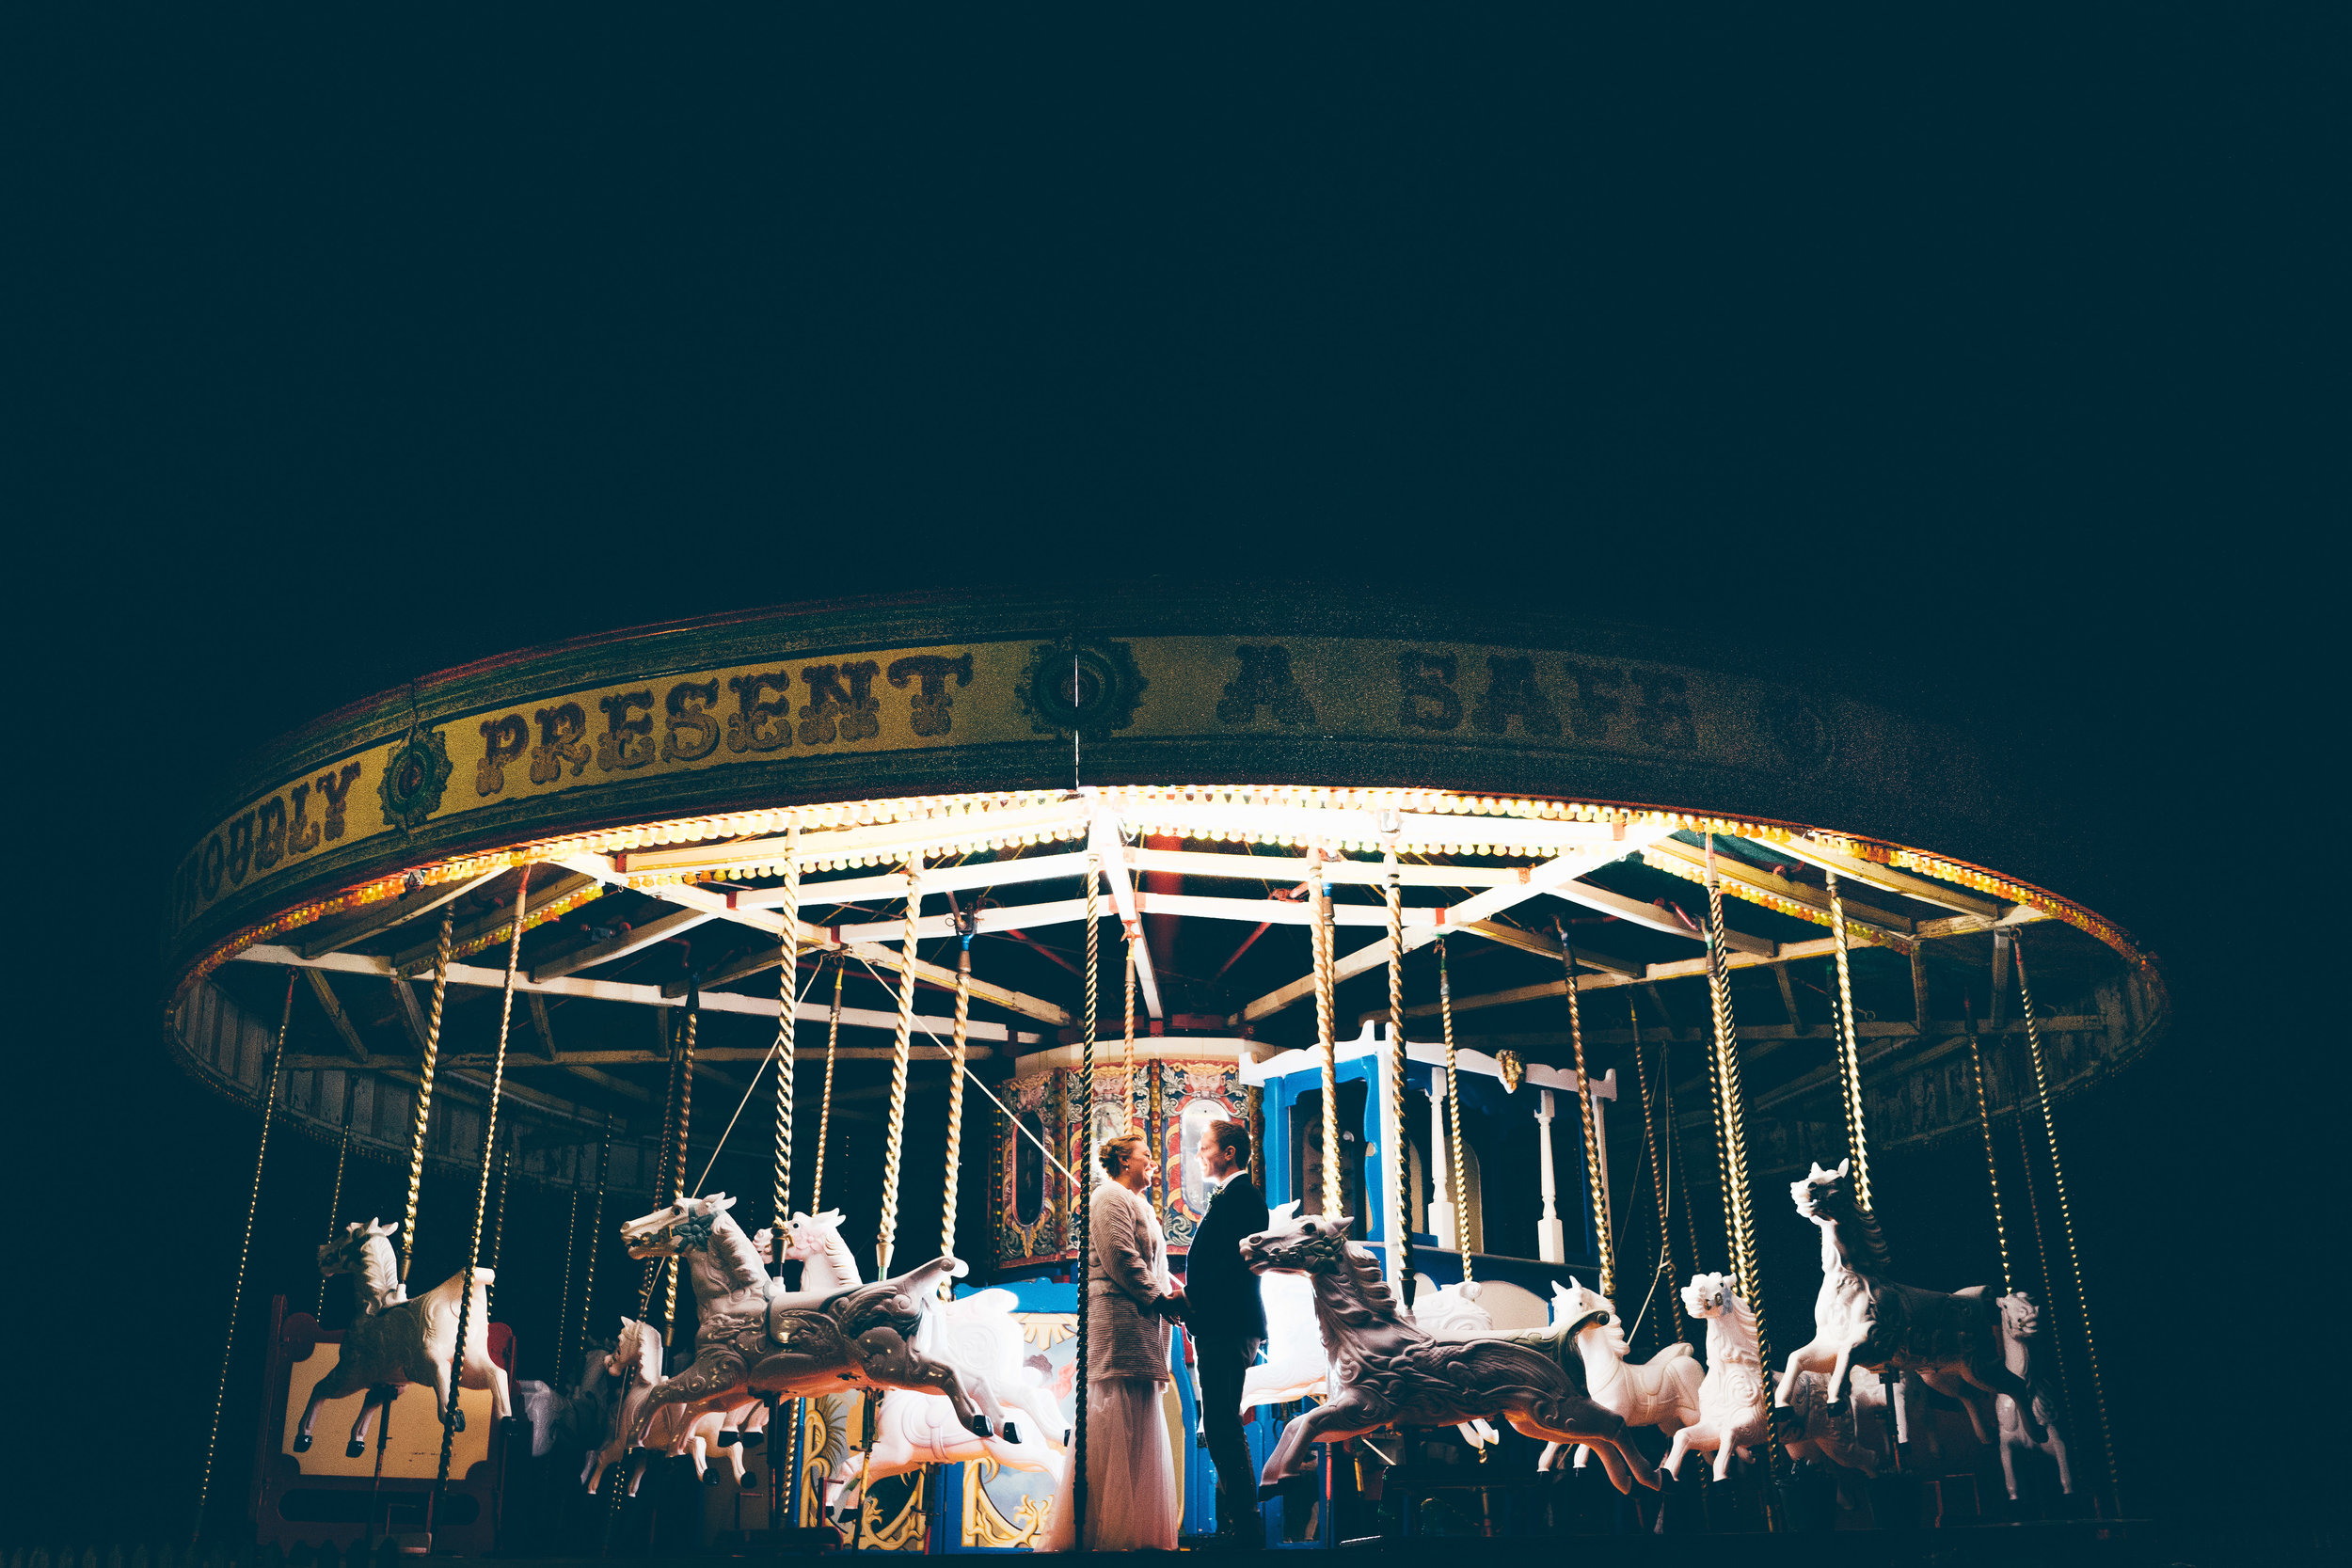 Late night carousel photo